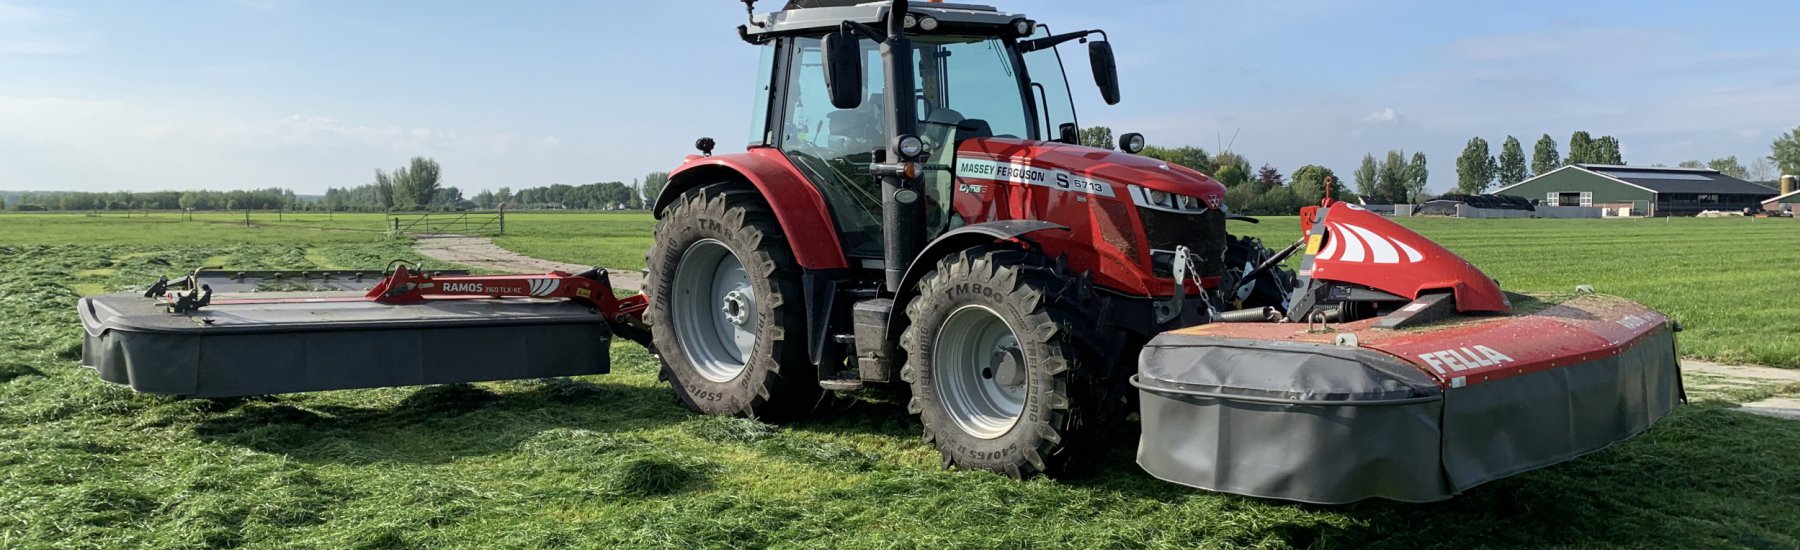 Afgeleverd aan een melkveebedrijf te Herwijnen: Strautmann verti-mix 20m3 voermengwagen